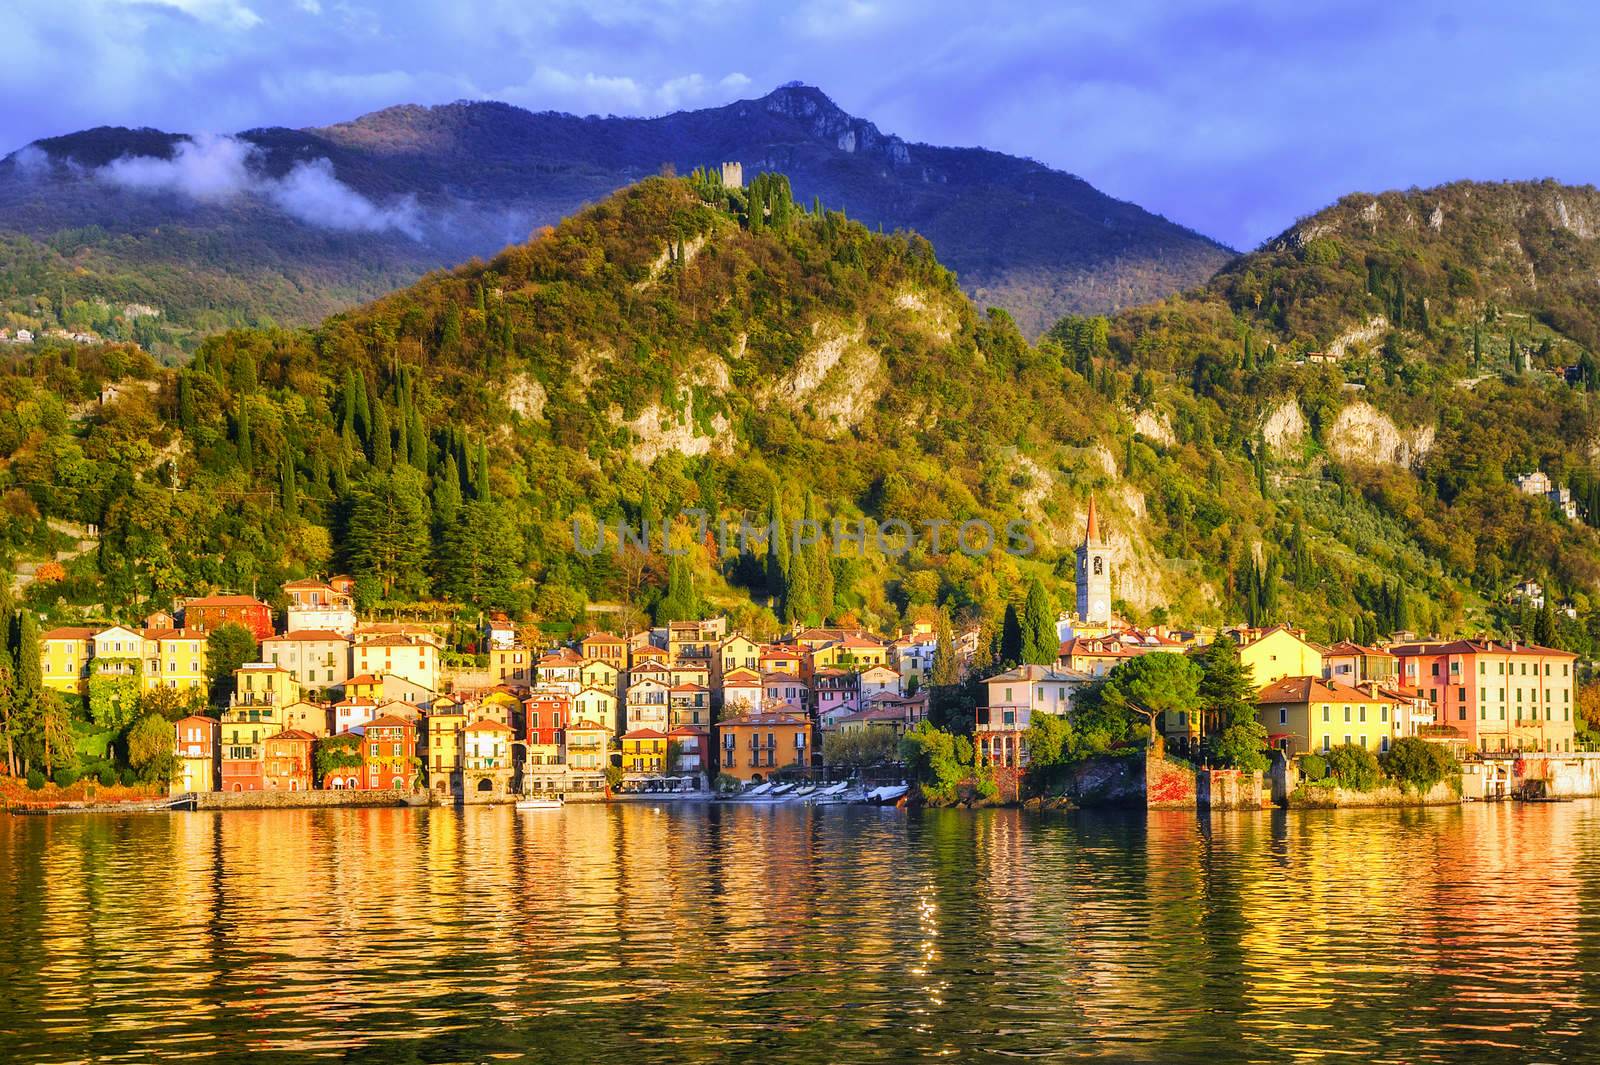 Menaggio, Como Lake, Italy